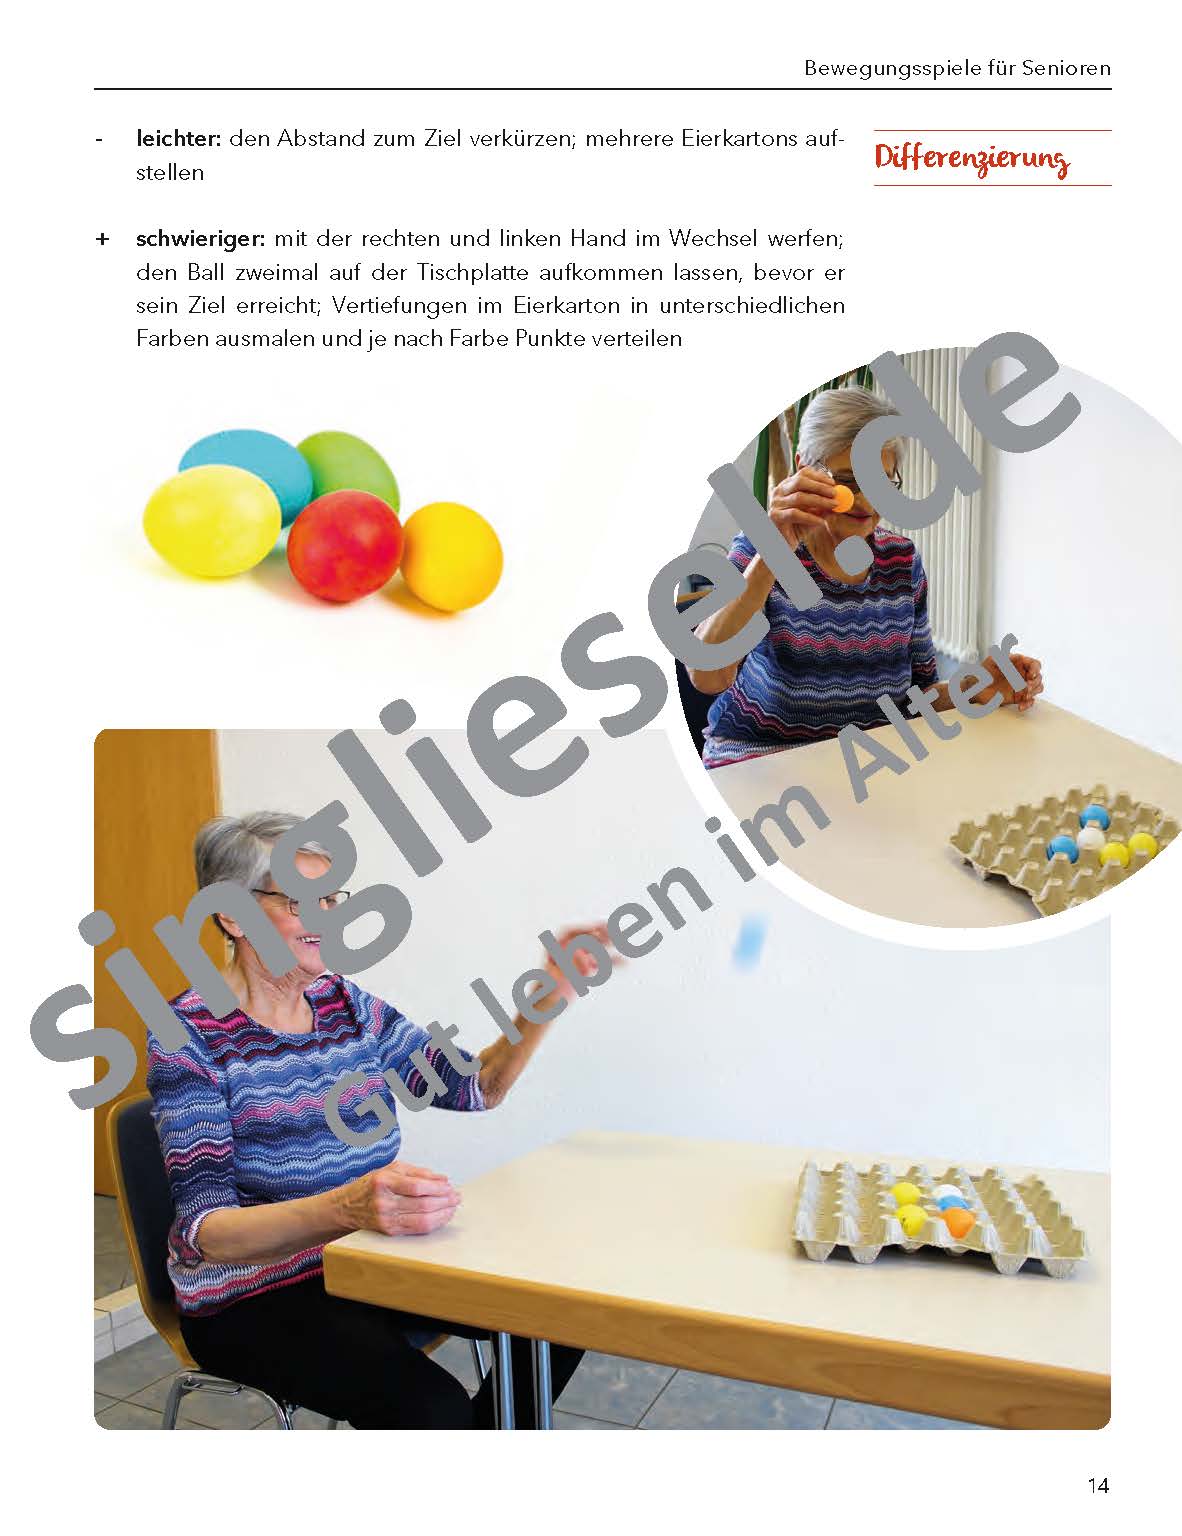 "Bewegungsspiele für Senioren, die Spaß machen" Eierlegen Beispiel